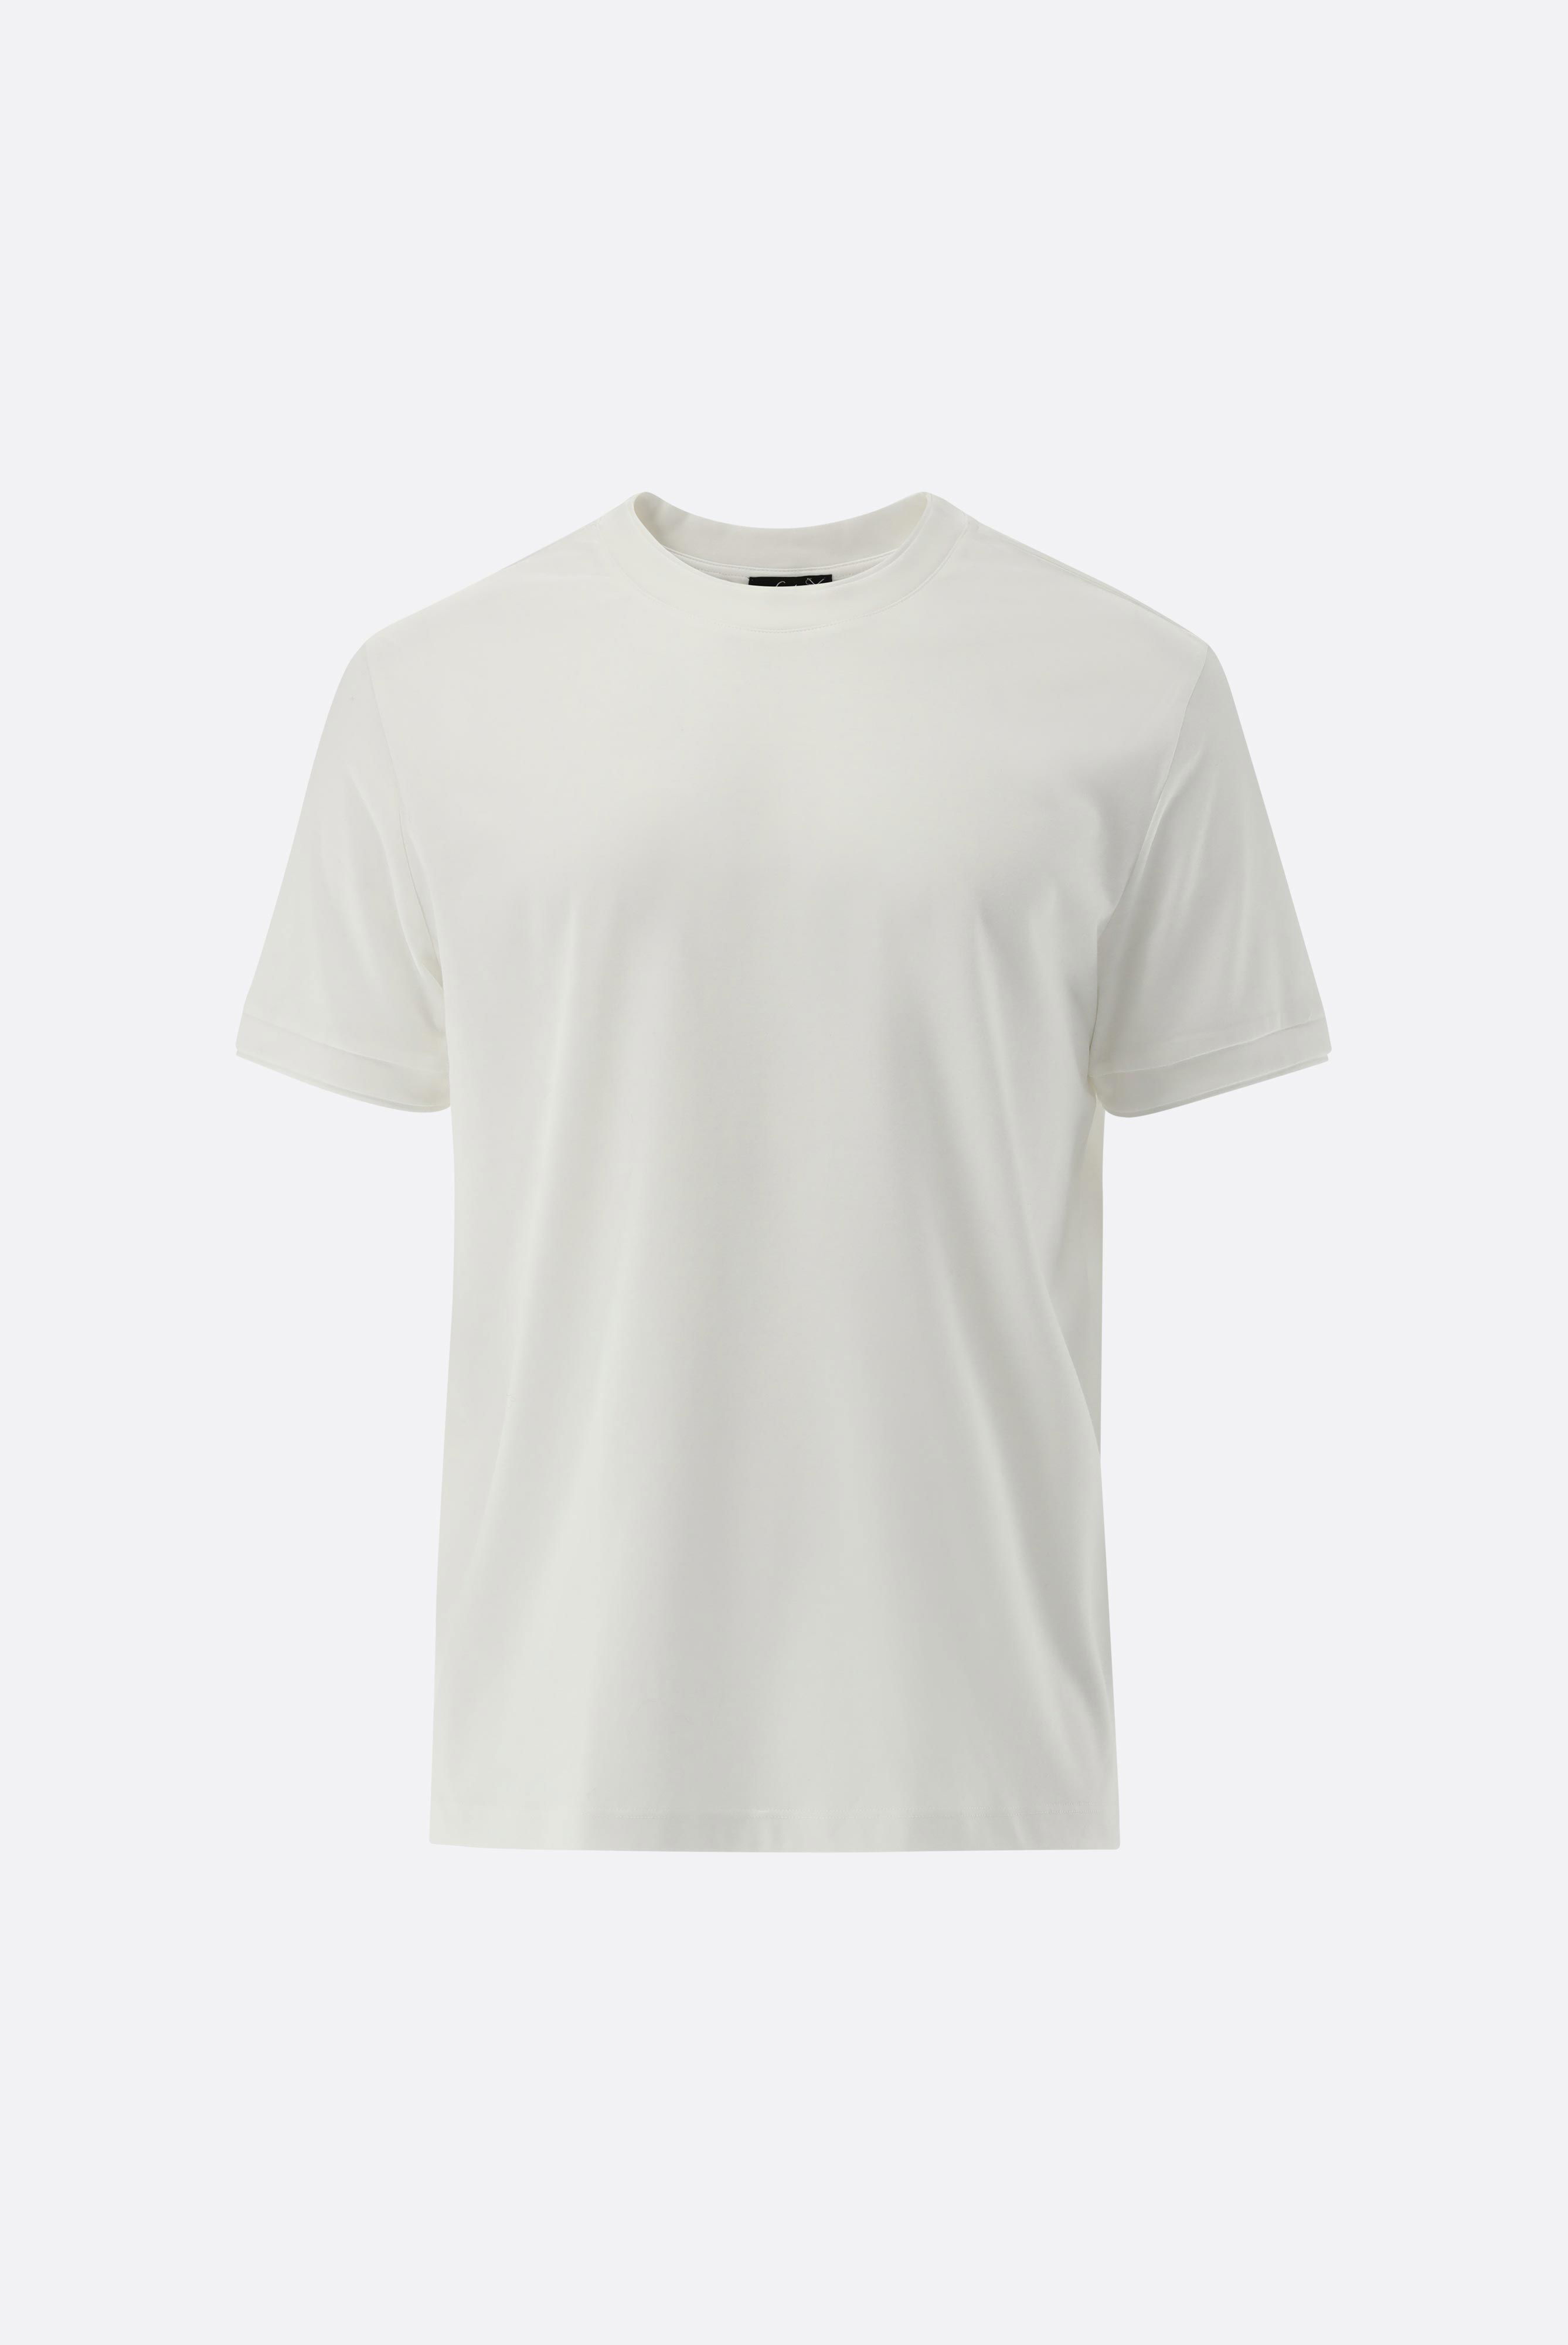 T-Shirts+T-Shirt mit Paspel Details+20.1673.U2.180053.000.S